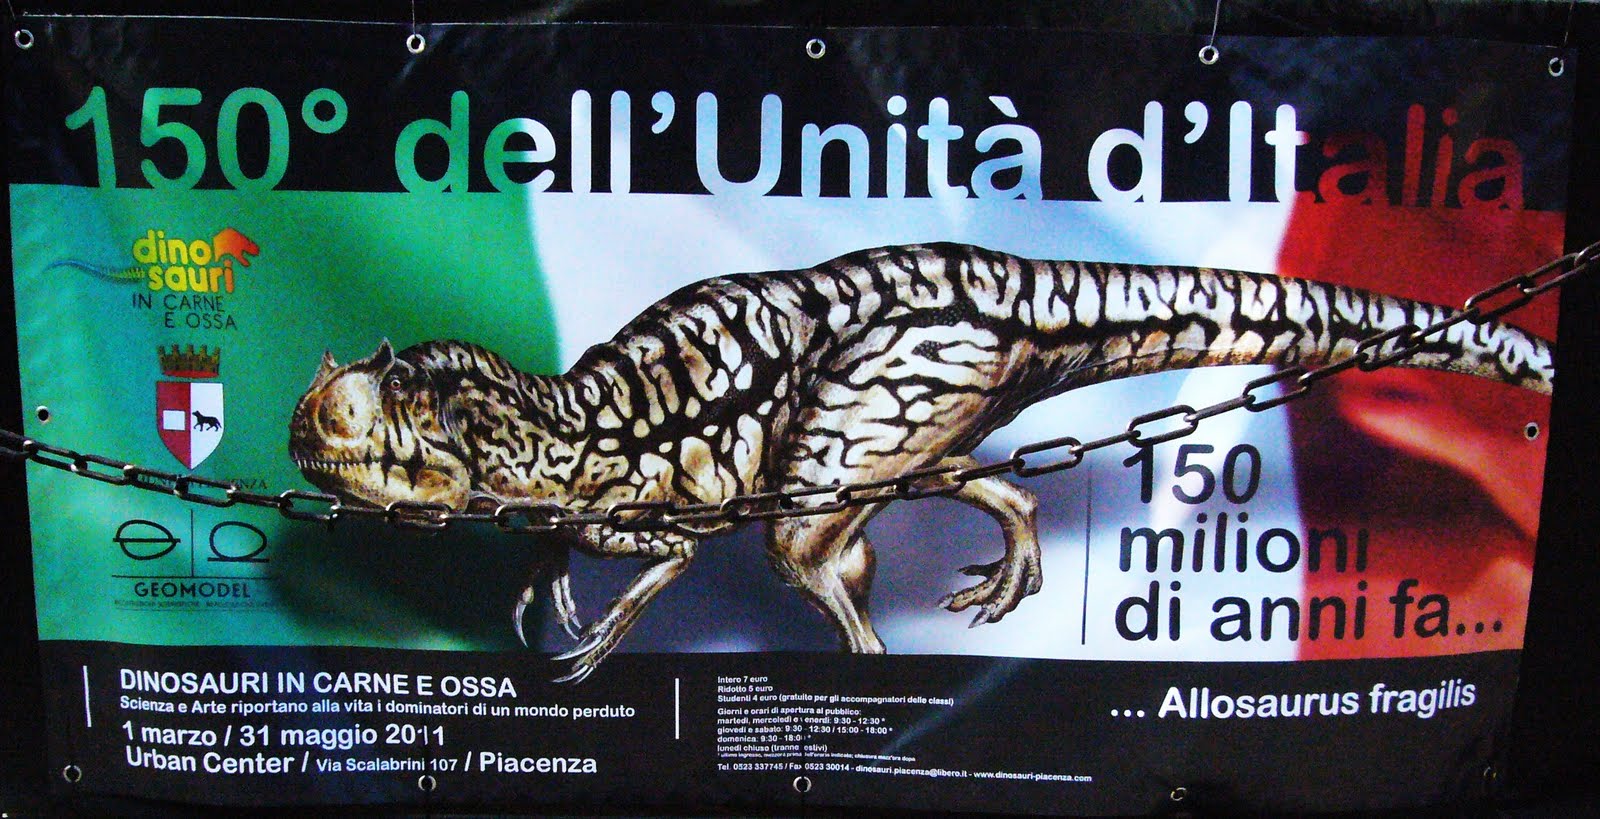 Fino al 31 Maggio 2011 26 giugno 2011 a Piacenza c ¨ la mostra "DINOSAURI IN CARNE E OSSA" Se avete in casa un amante del genere portatecelo